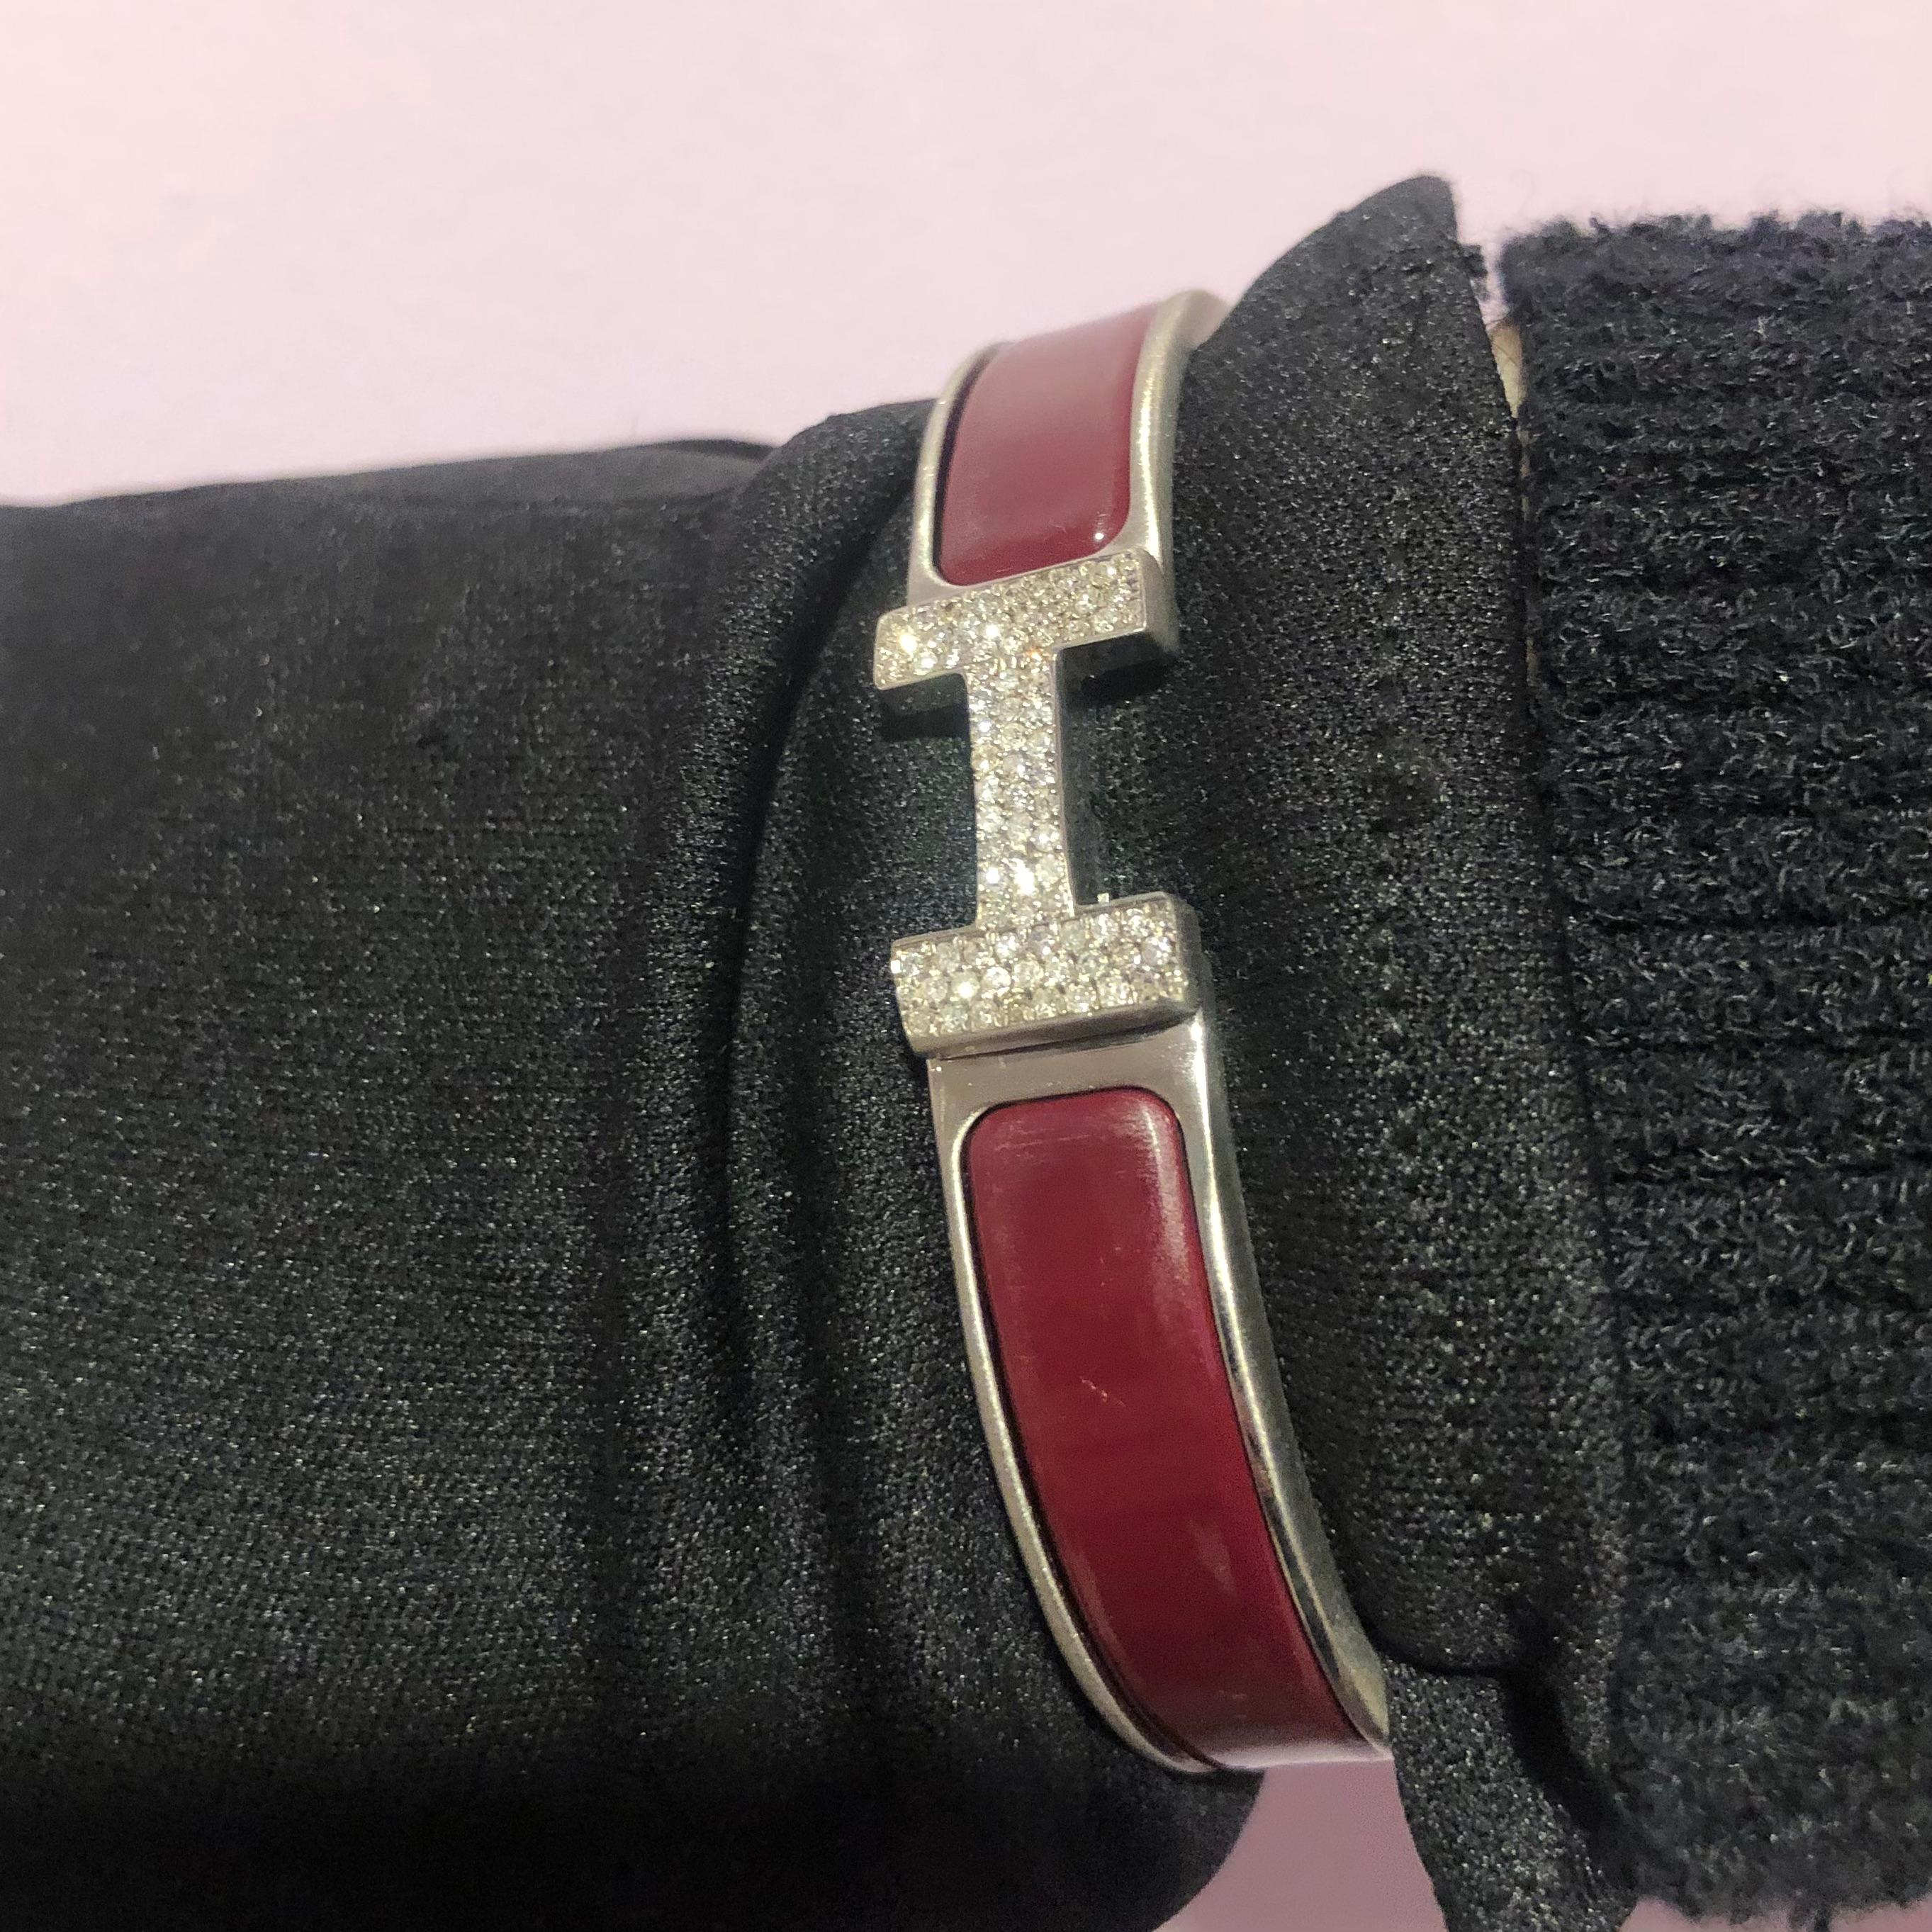 Bracelet Hermes Clic H avec diamants sur mesure, complet avec boîte d'origine.

Un bracelet Hermes Clic H taille GM en rouge et argent est serti à la main d'environ 1,25 carats de diamants naturels SI-I d'origine minière. Les diamants brillent de